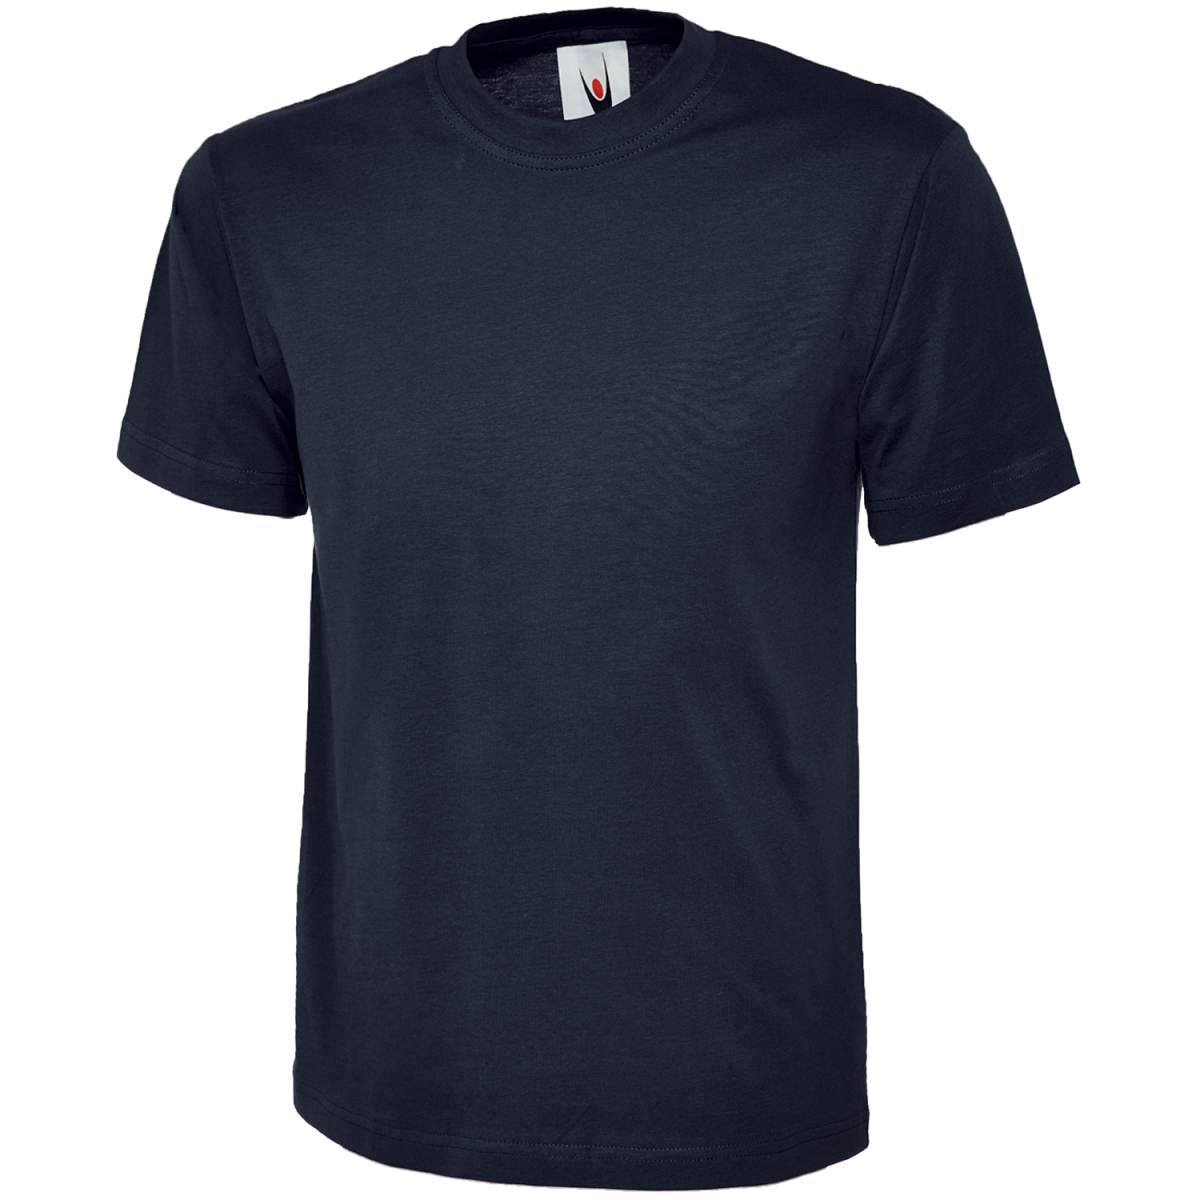 elysee, Moderne € - 4,49 ULRICH und T-Shirts ergonomische Modell